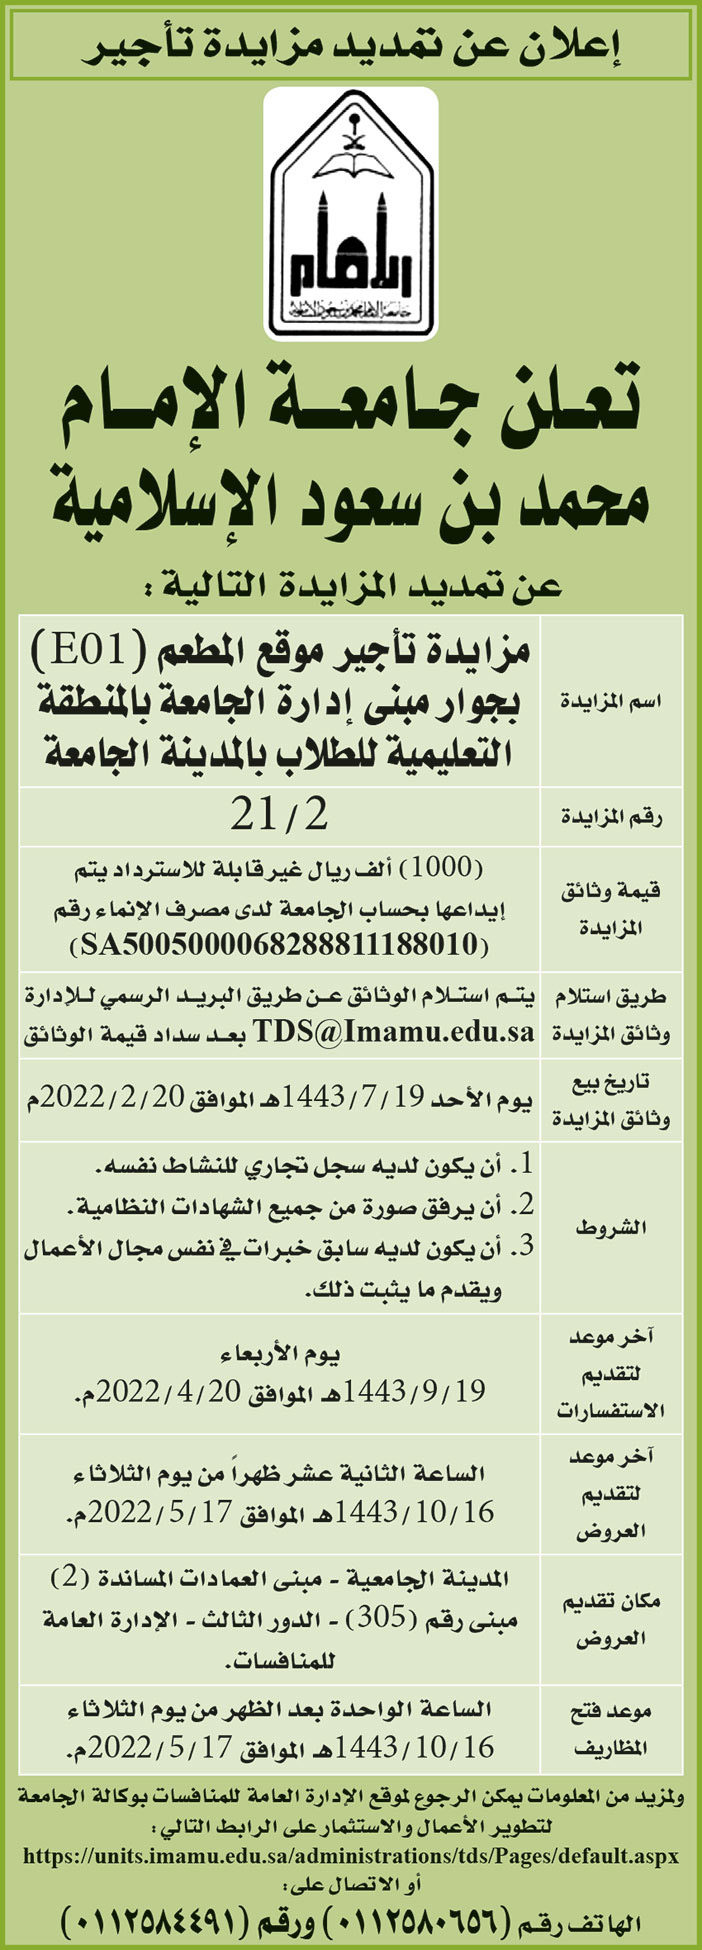 جامعة الإمام محمد بن سعود الإسلامية تمدد المزايدة على تأجير المطعم (E01) بجواتر مبنى إدارة الجامعة بالمنطقة التعليمية للطلاب بالمدينة الجامعية 